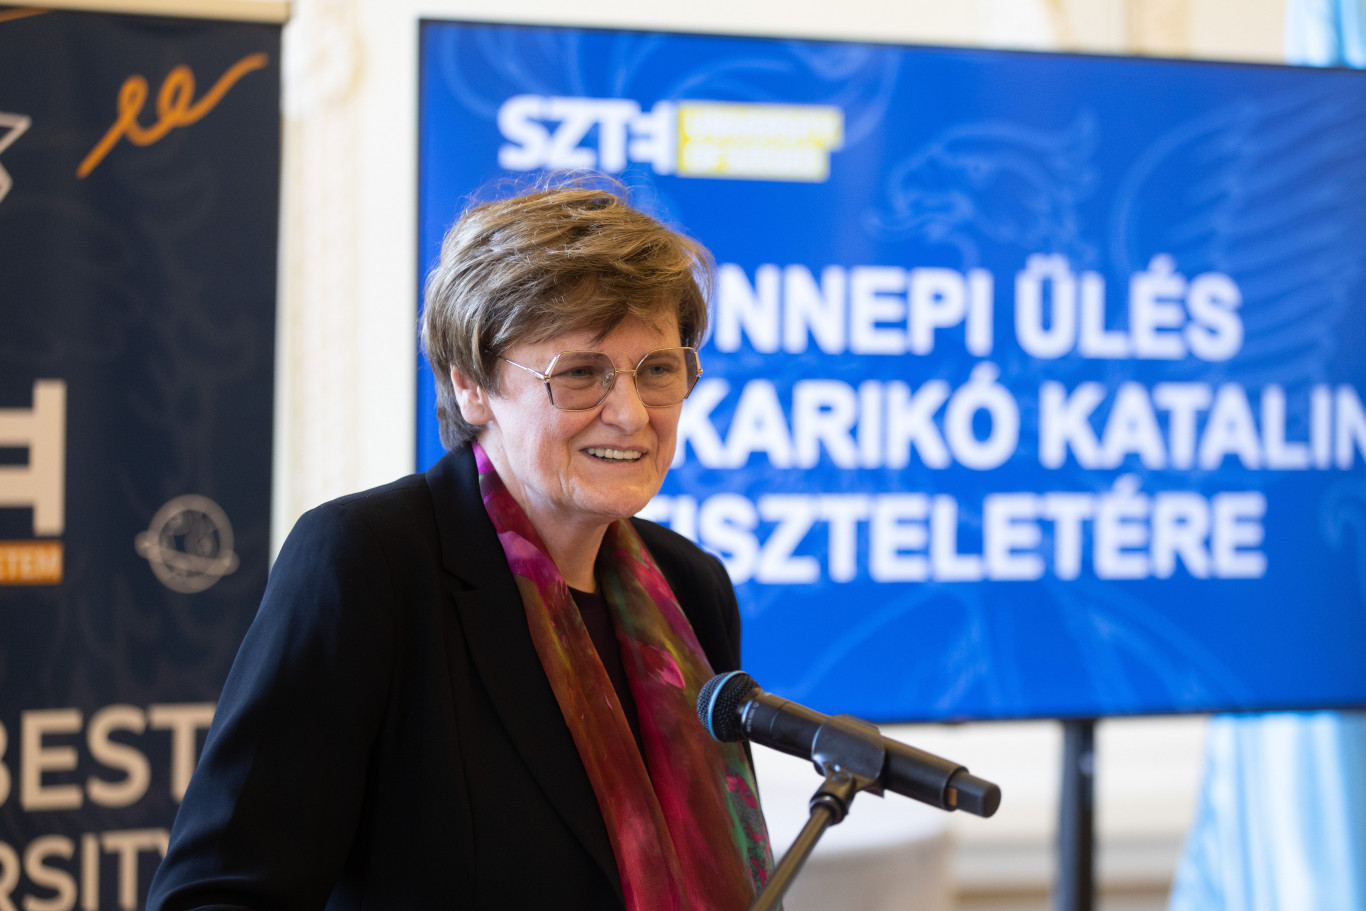 Karikó Katalin a szegedi egyetemnek ajándékozta a Nobel-díját és megalapította a JATE-díjat